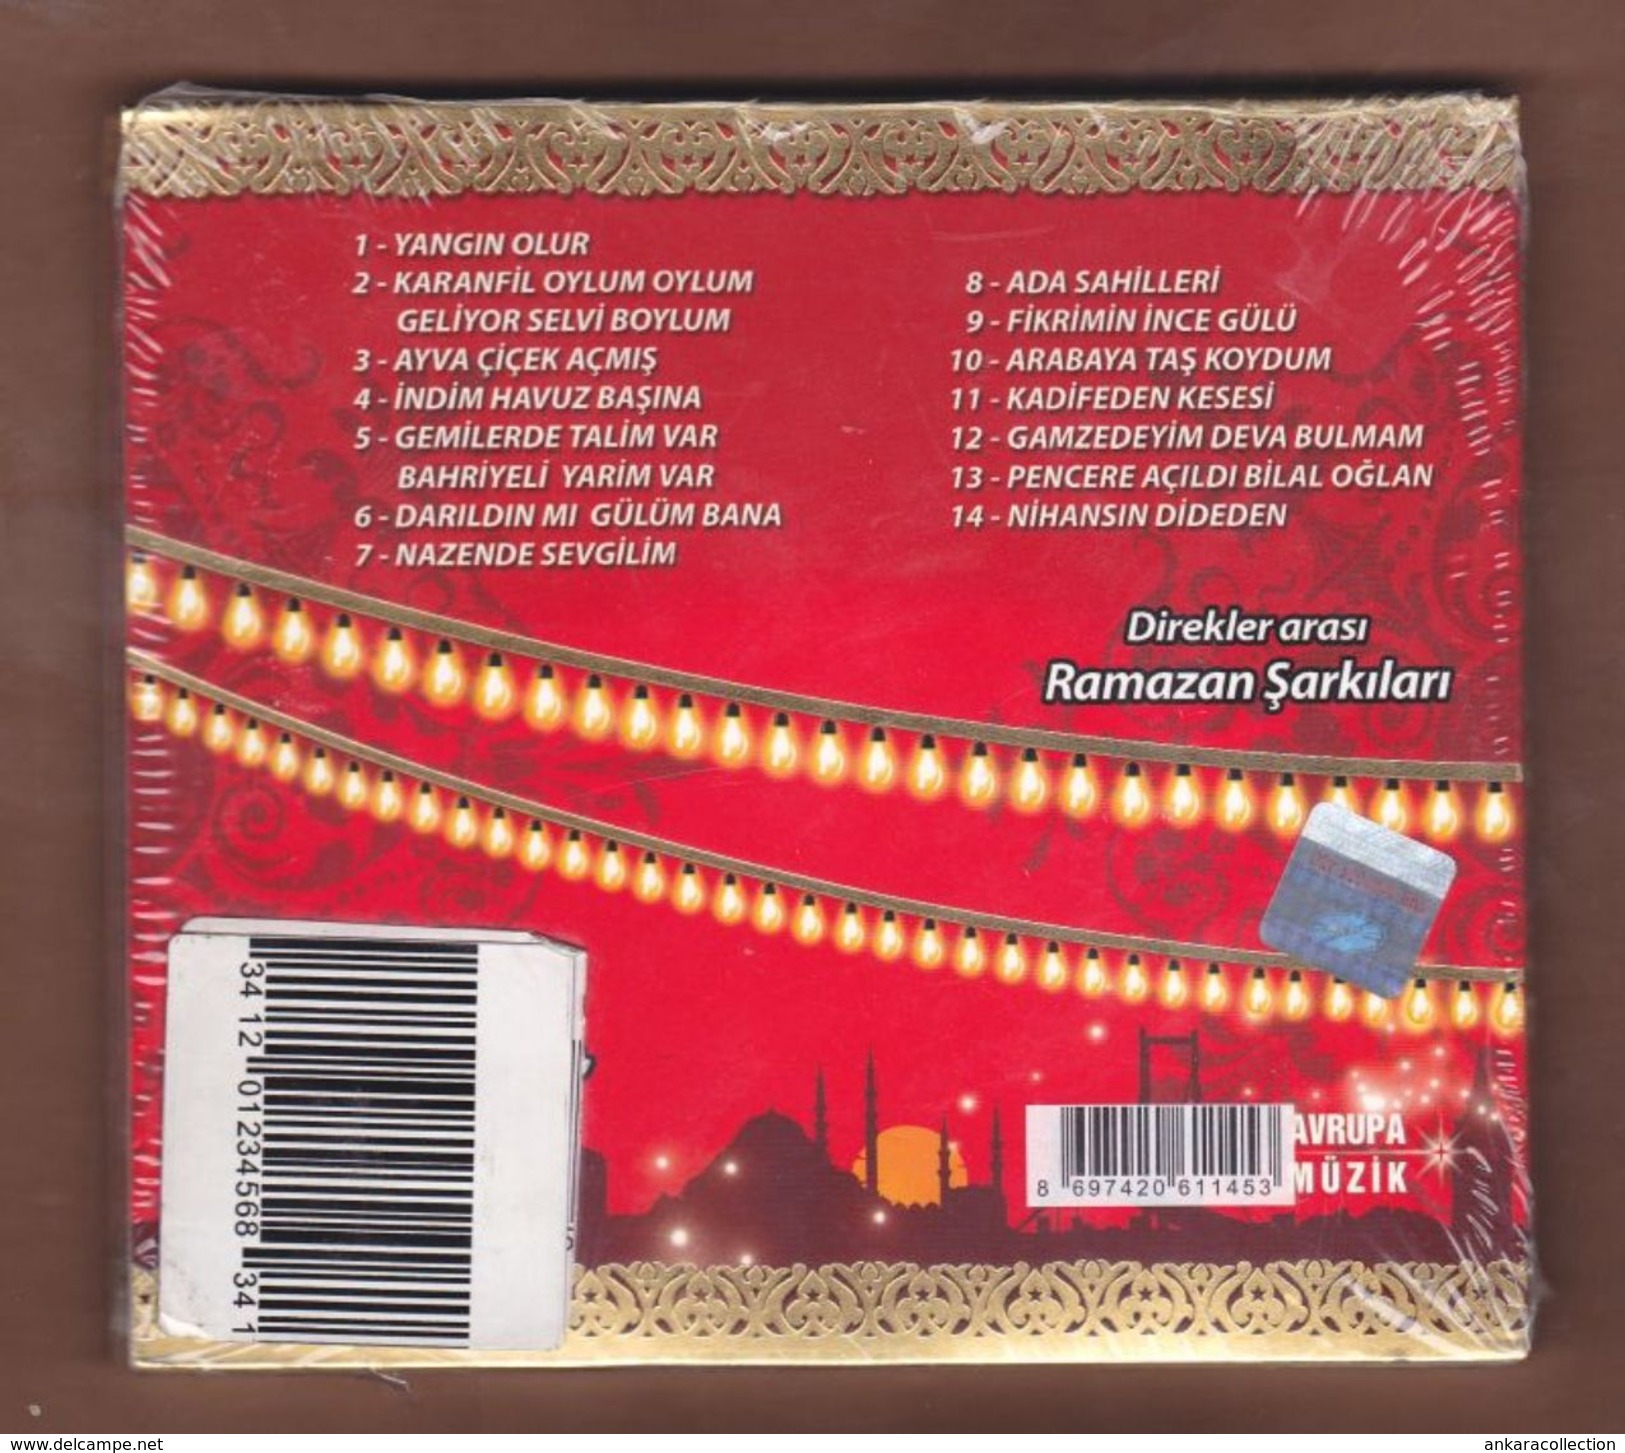 AC - Cola Turka Ala Turka Direkler Arası Ramazan şarkıları BRAND NEW TURKISH MUSIC CD - World Music